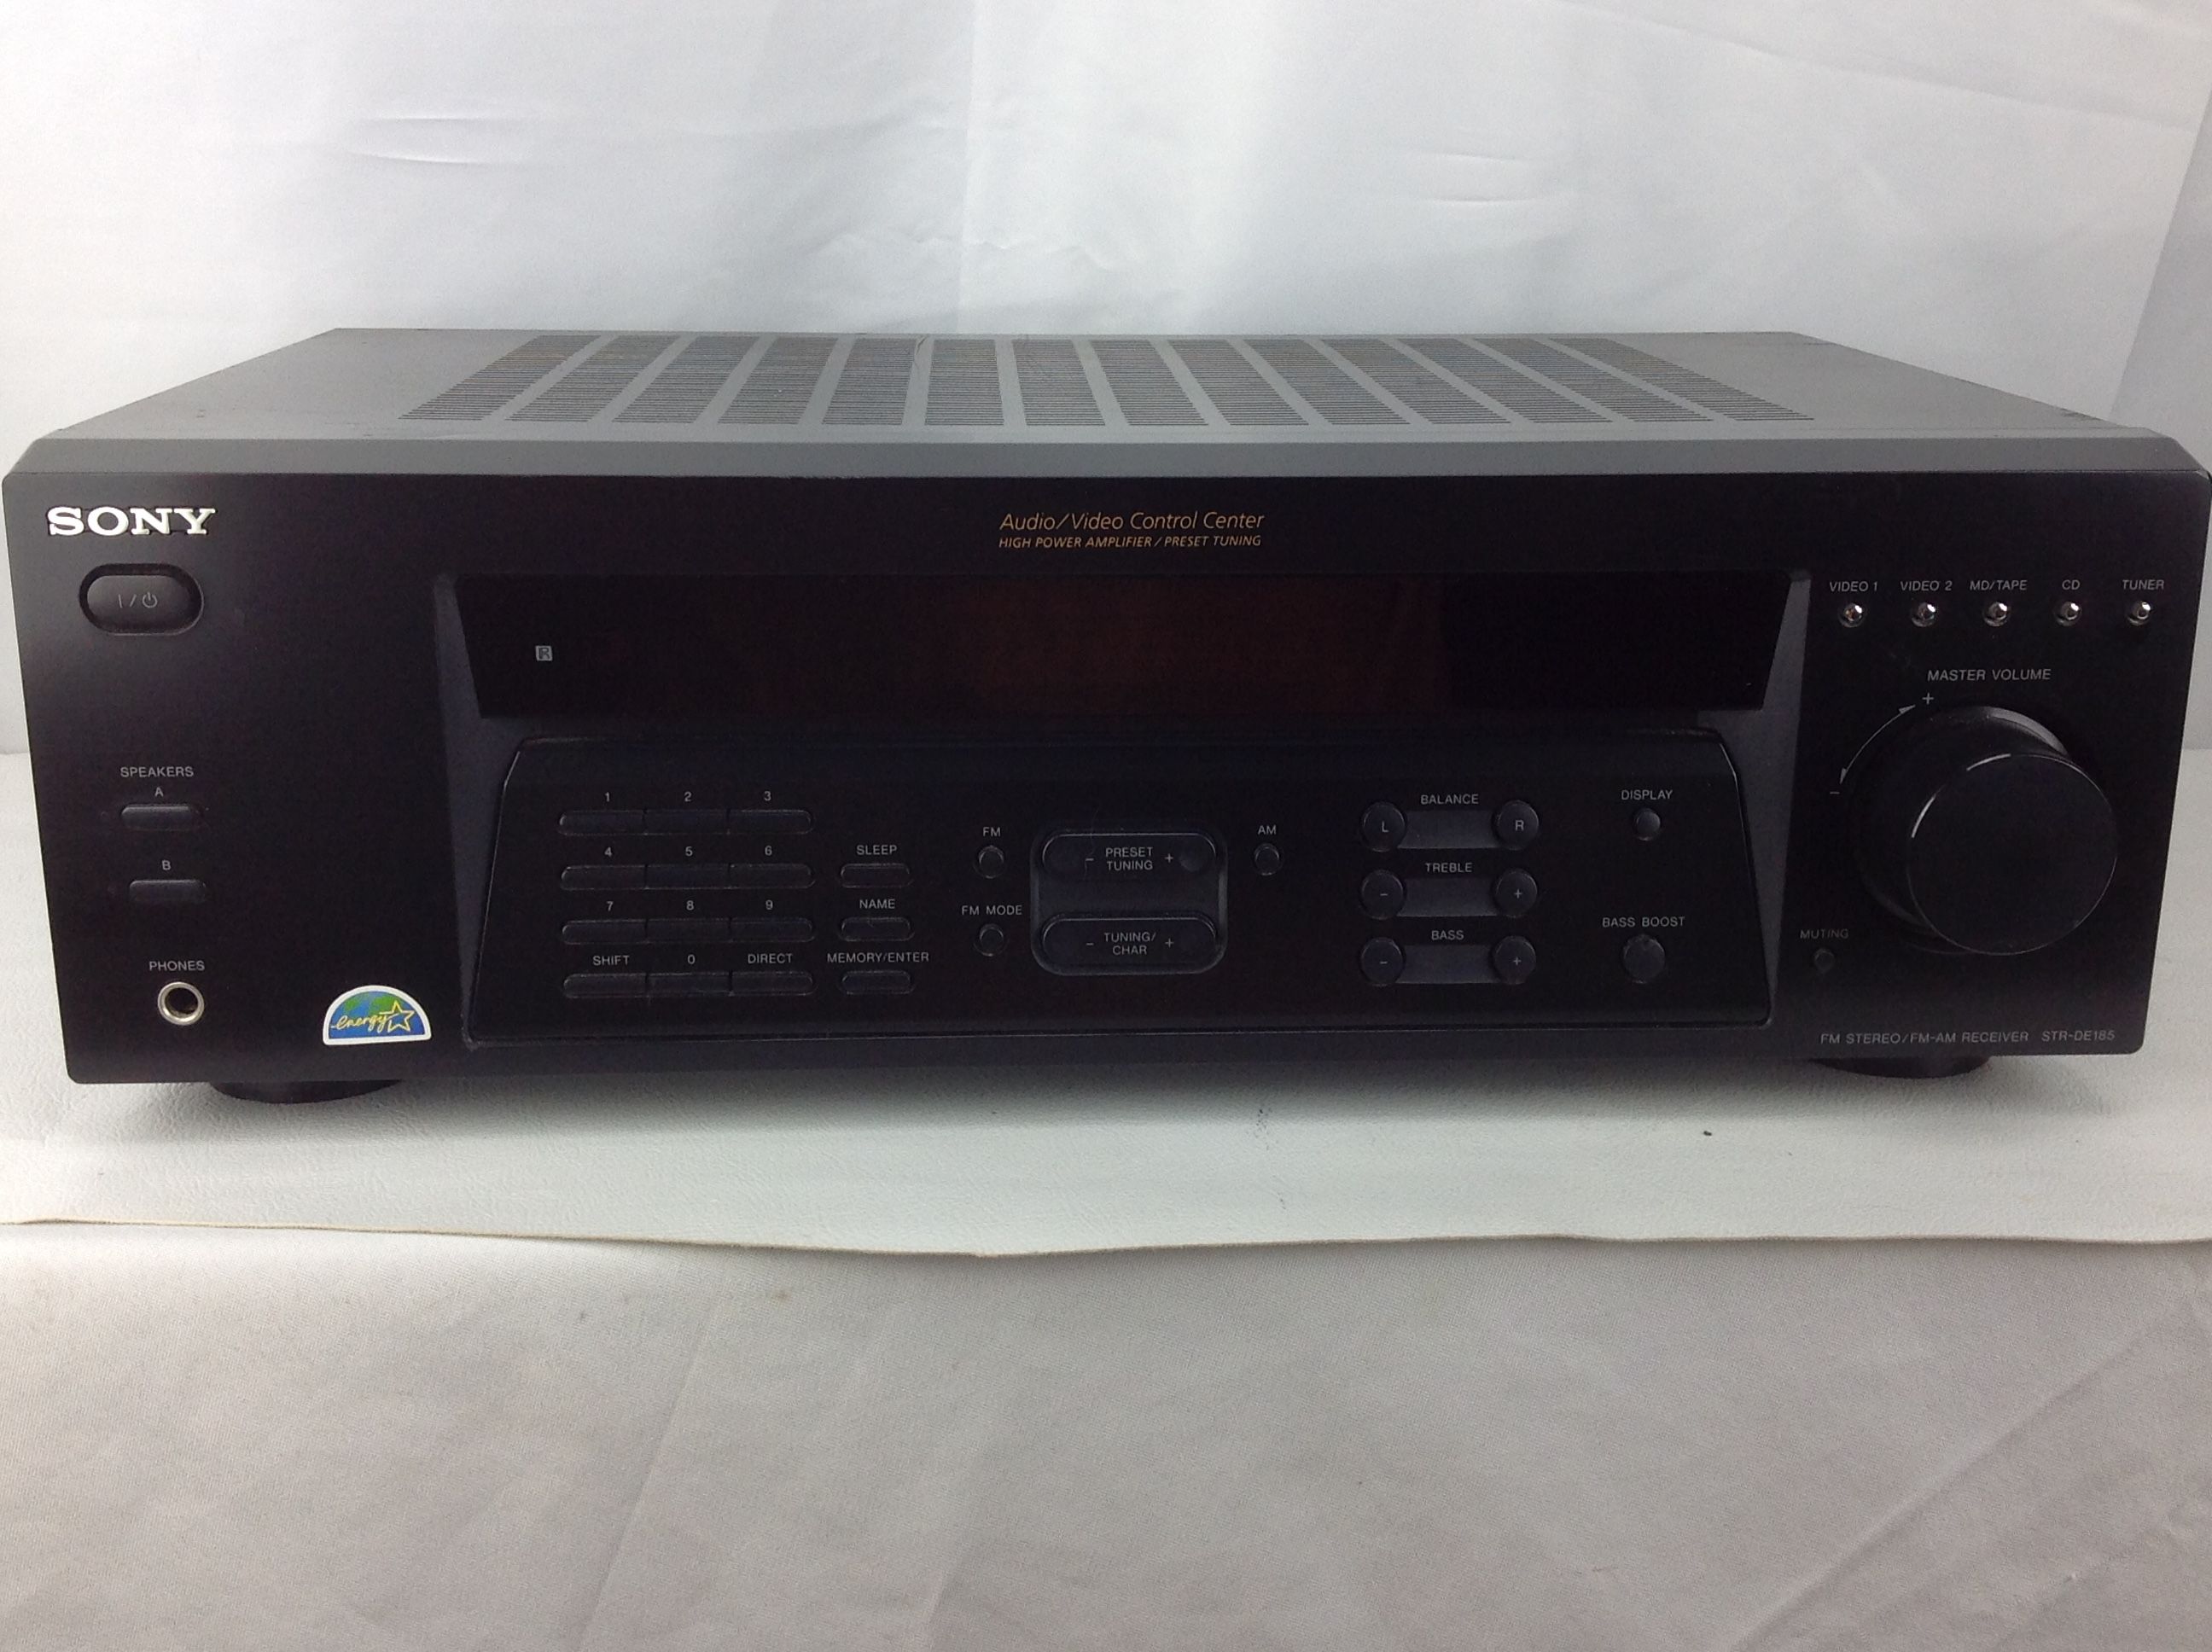 SONY AM/FM Stereo Receiver A/V Control Center